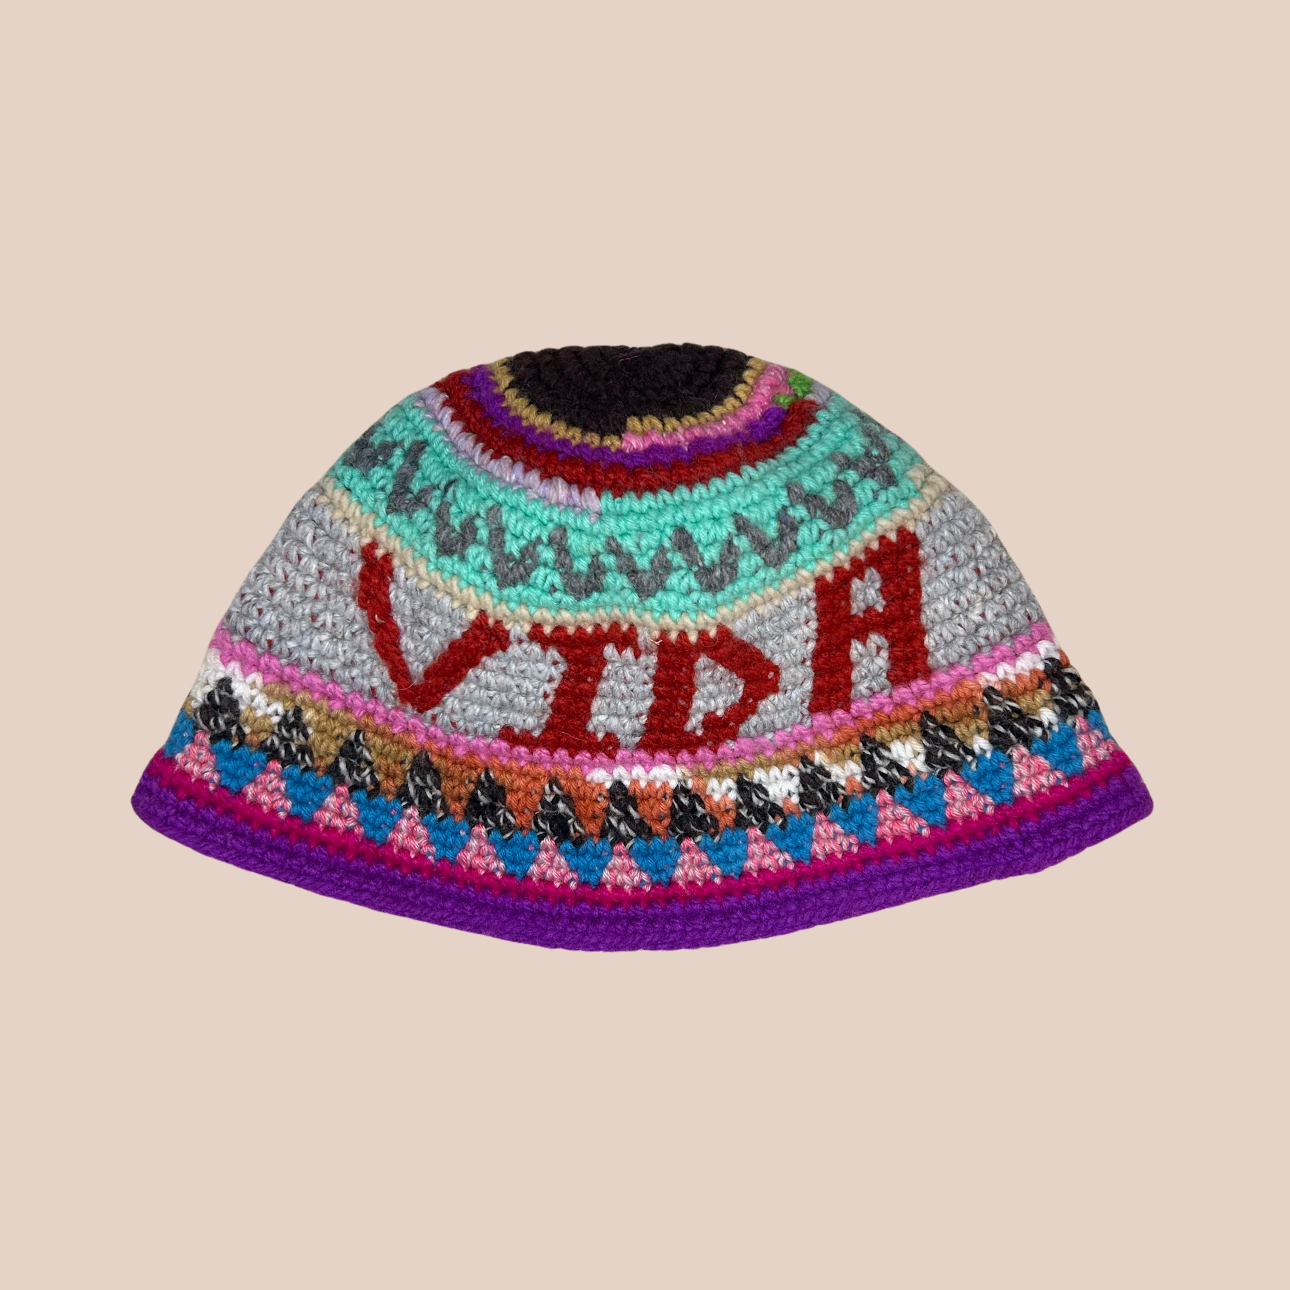 Un bucket hat crocheté en laine et acrylique, arborant des couleurs vives et audacieuses, texte vida